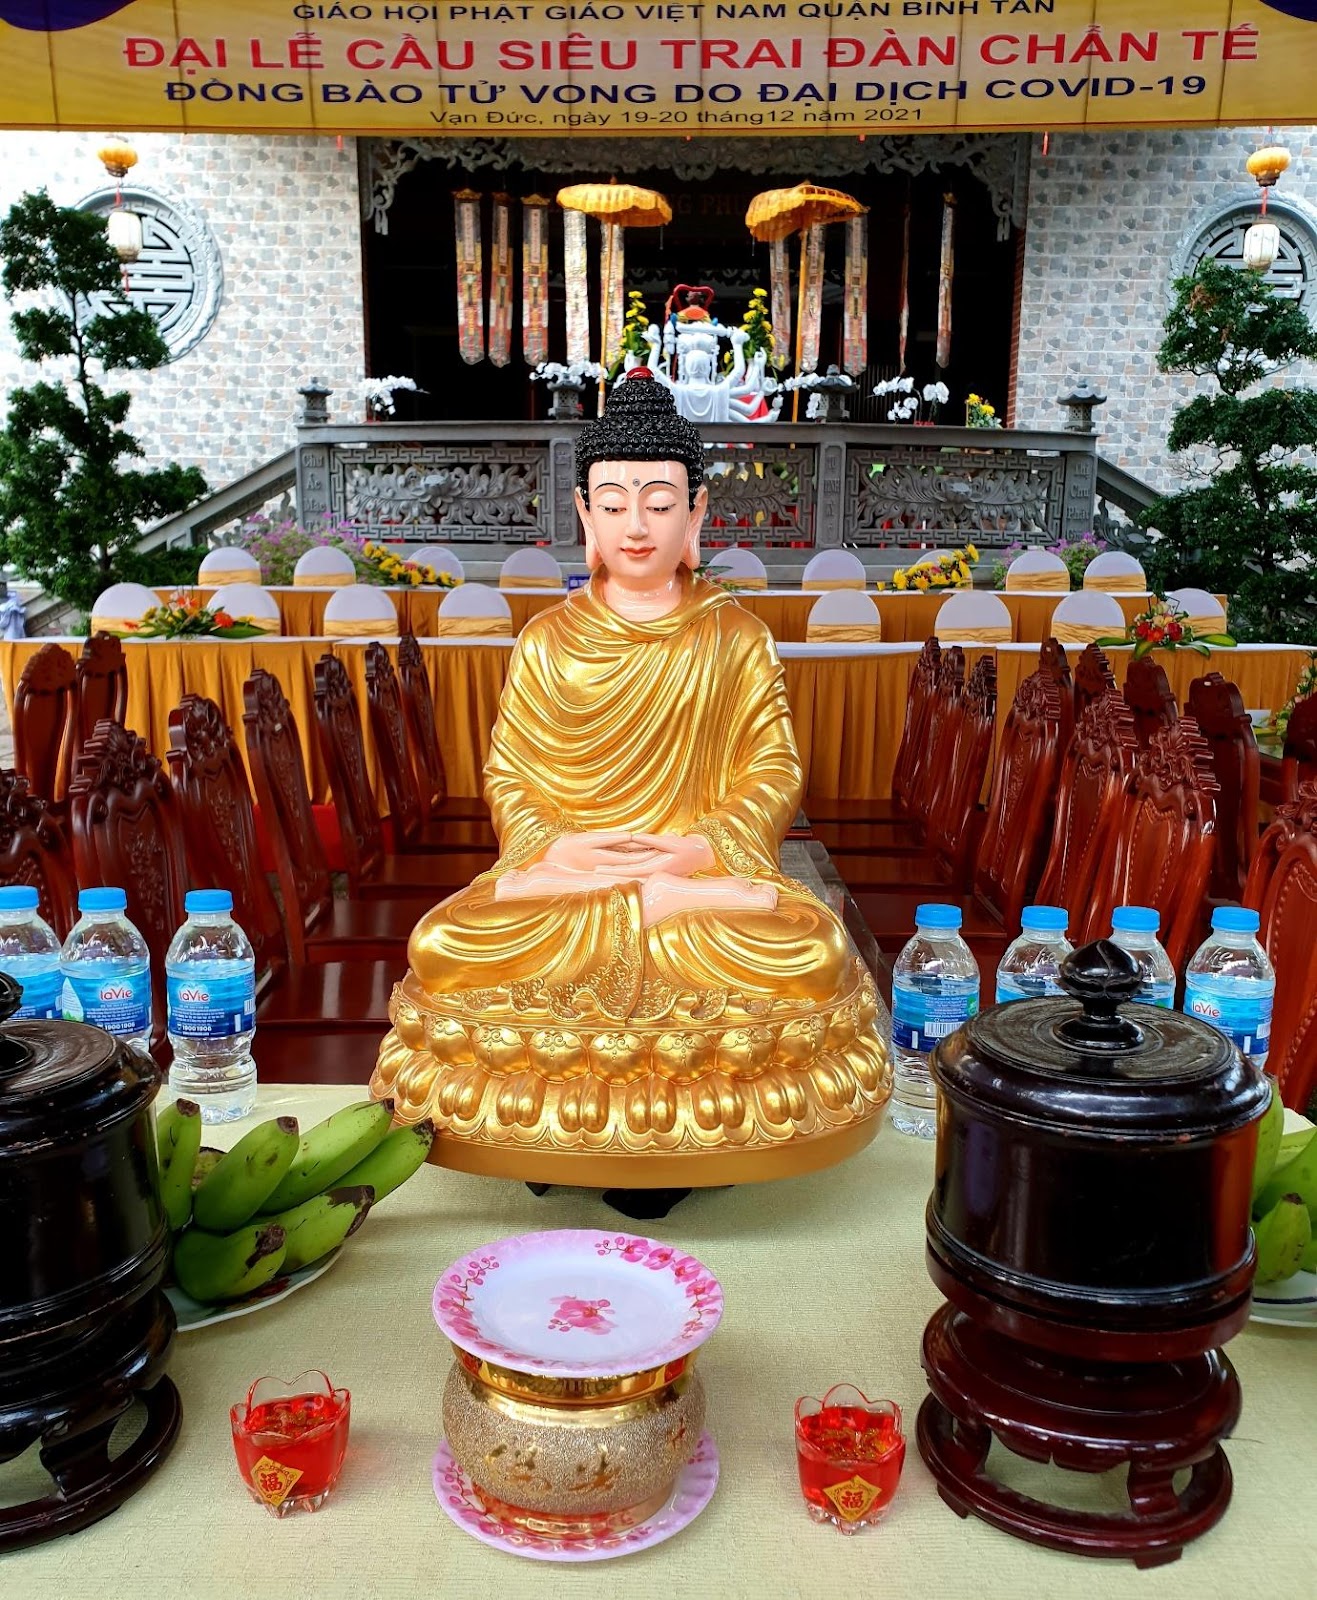 Cầu siêu (Phật giáo) – Wikipedia tiếng Việt